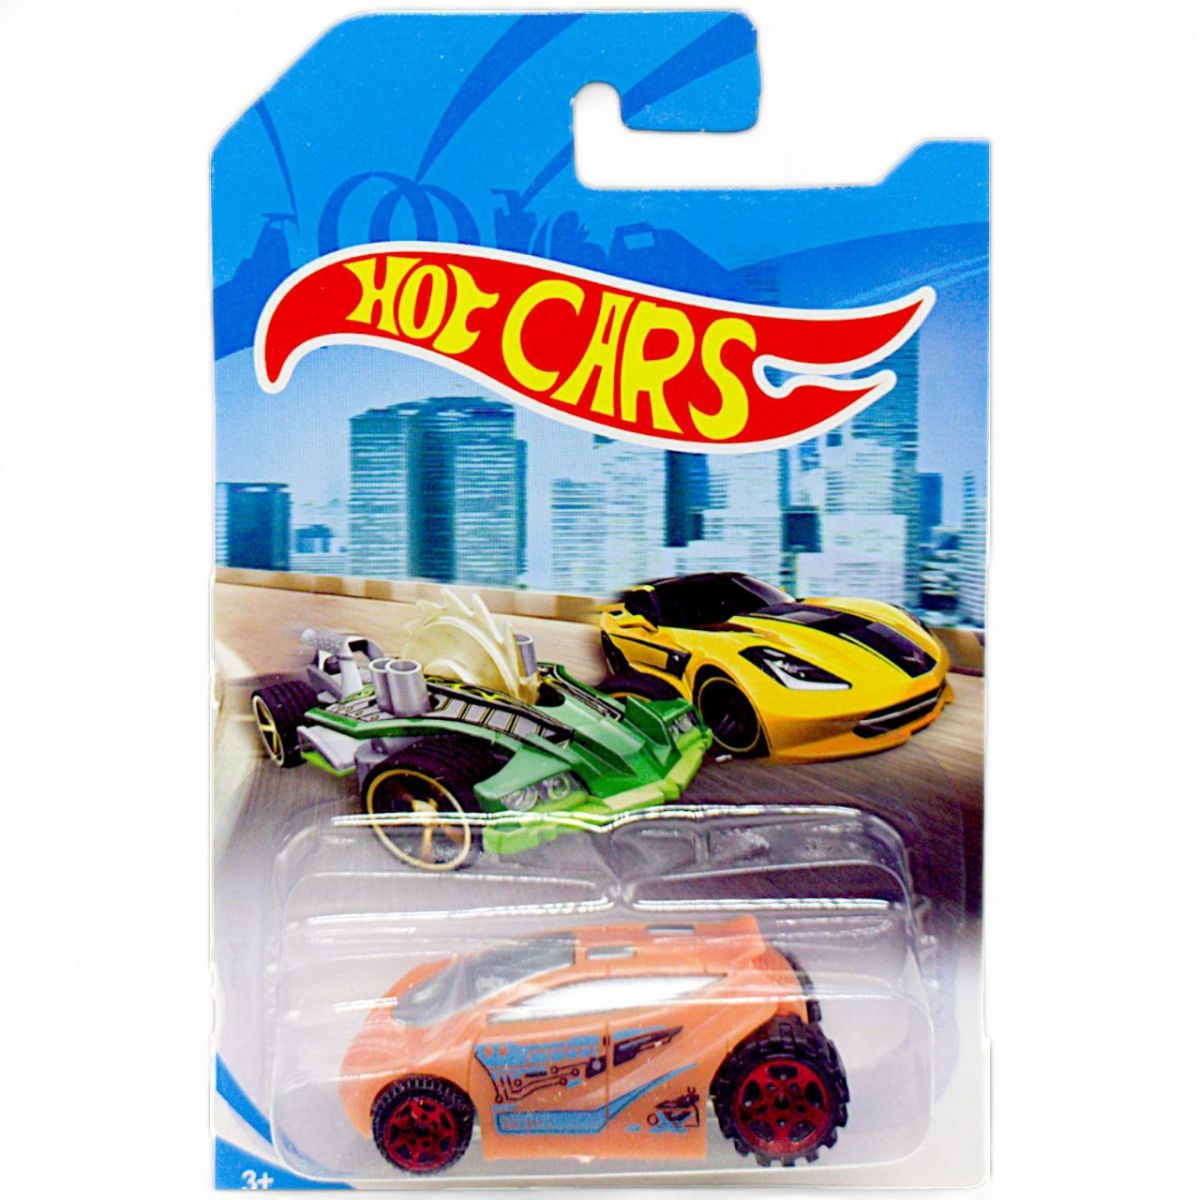 Машинка пластиковая "Hot CARS" (оранжевый)